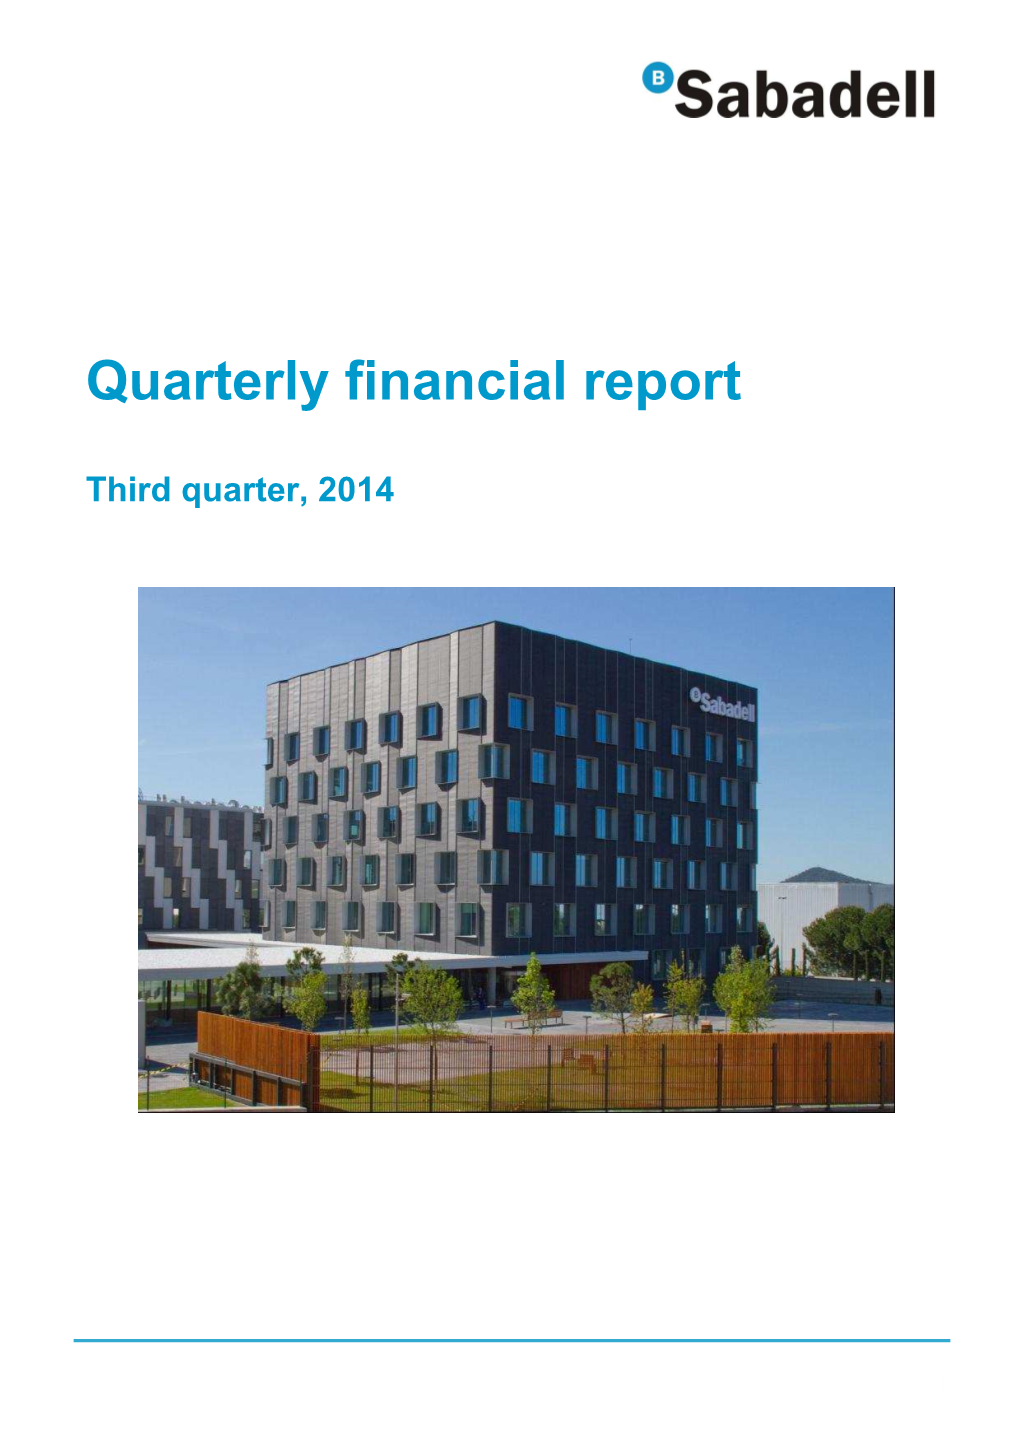 Quarterly Financial Report